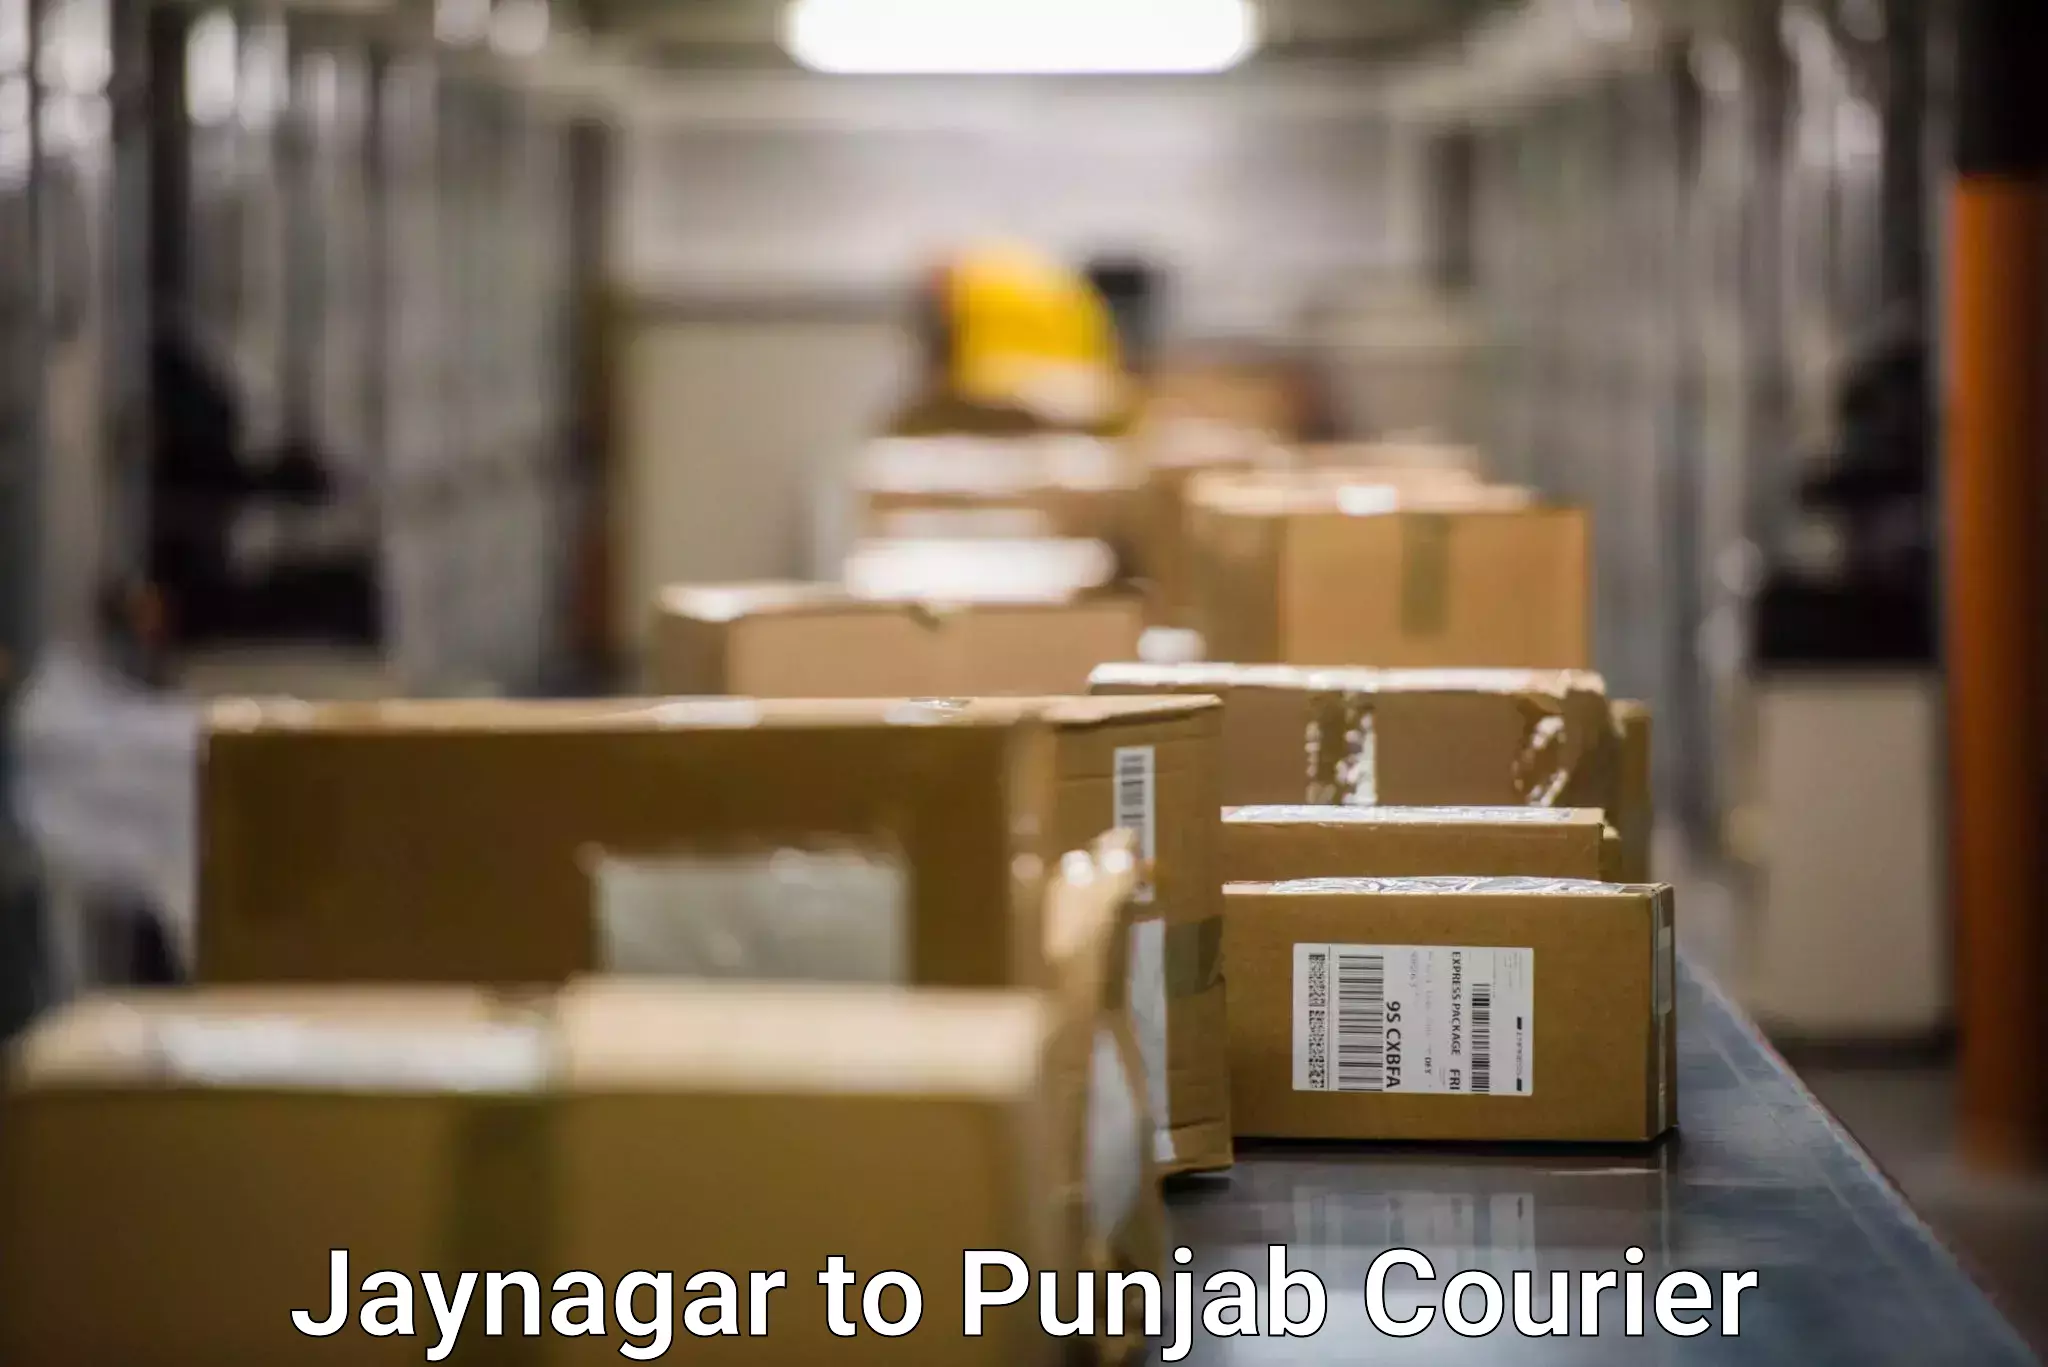 Efficient order fulfillment Jaynagar to Anandpur Sahib